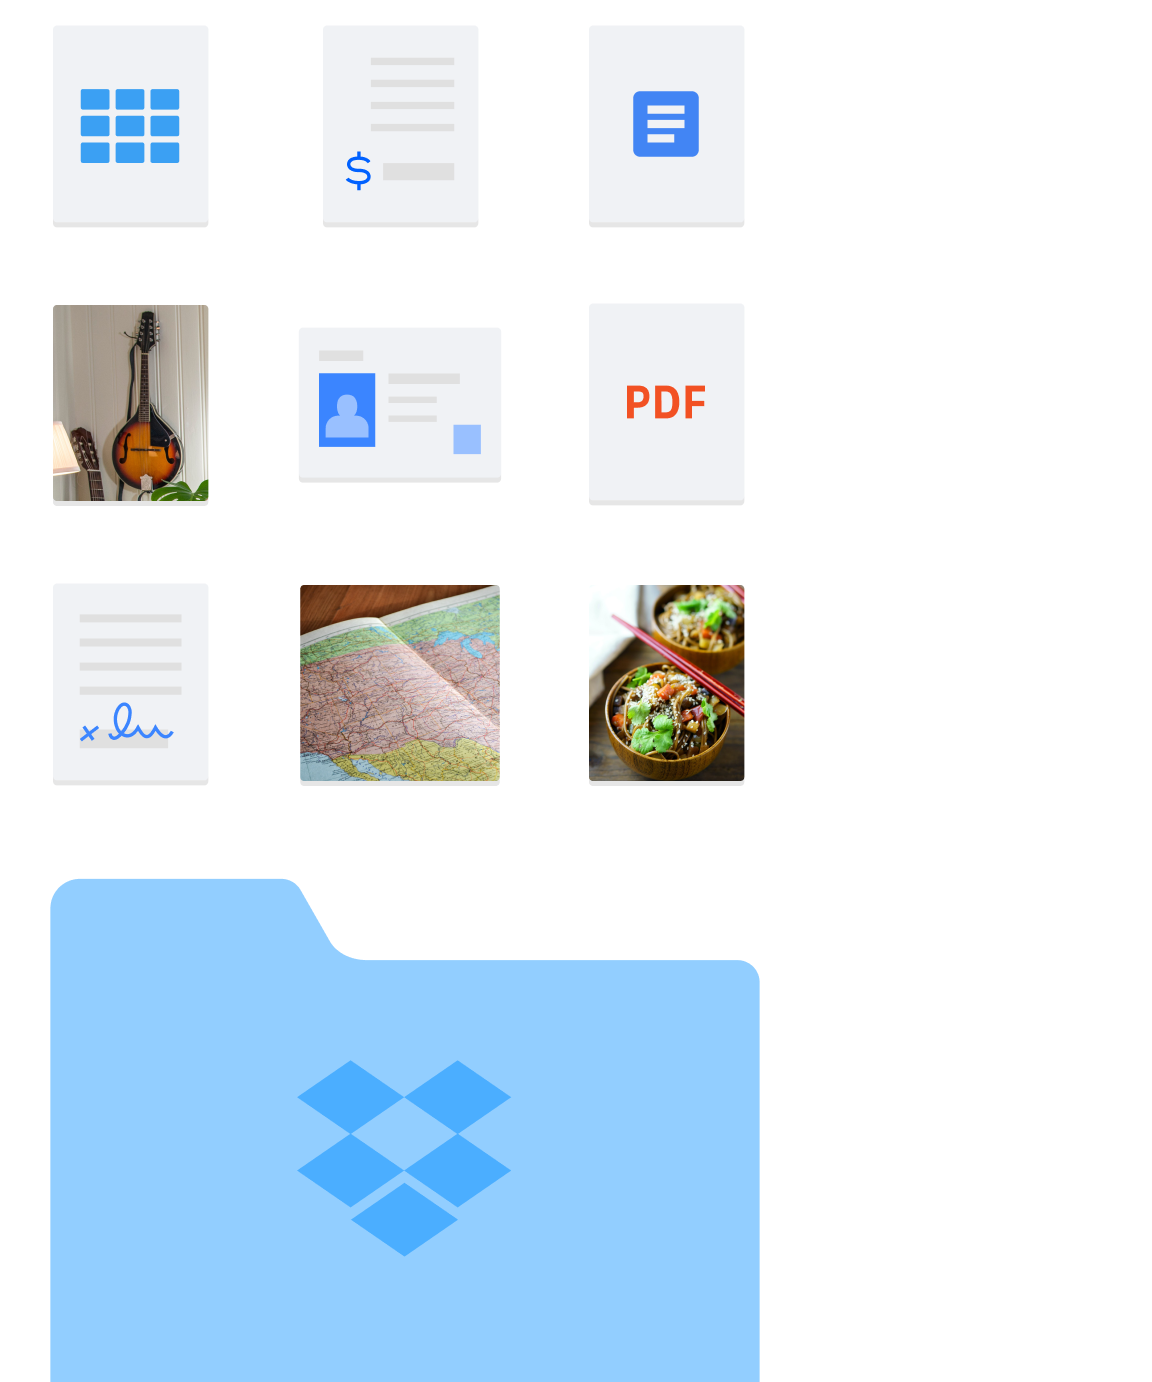 Imagem de vários tipos de pastas e arquivos, como imagens e documentos, contidos no Dropbox.